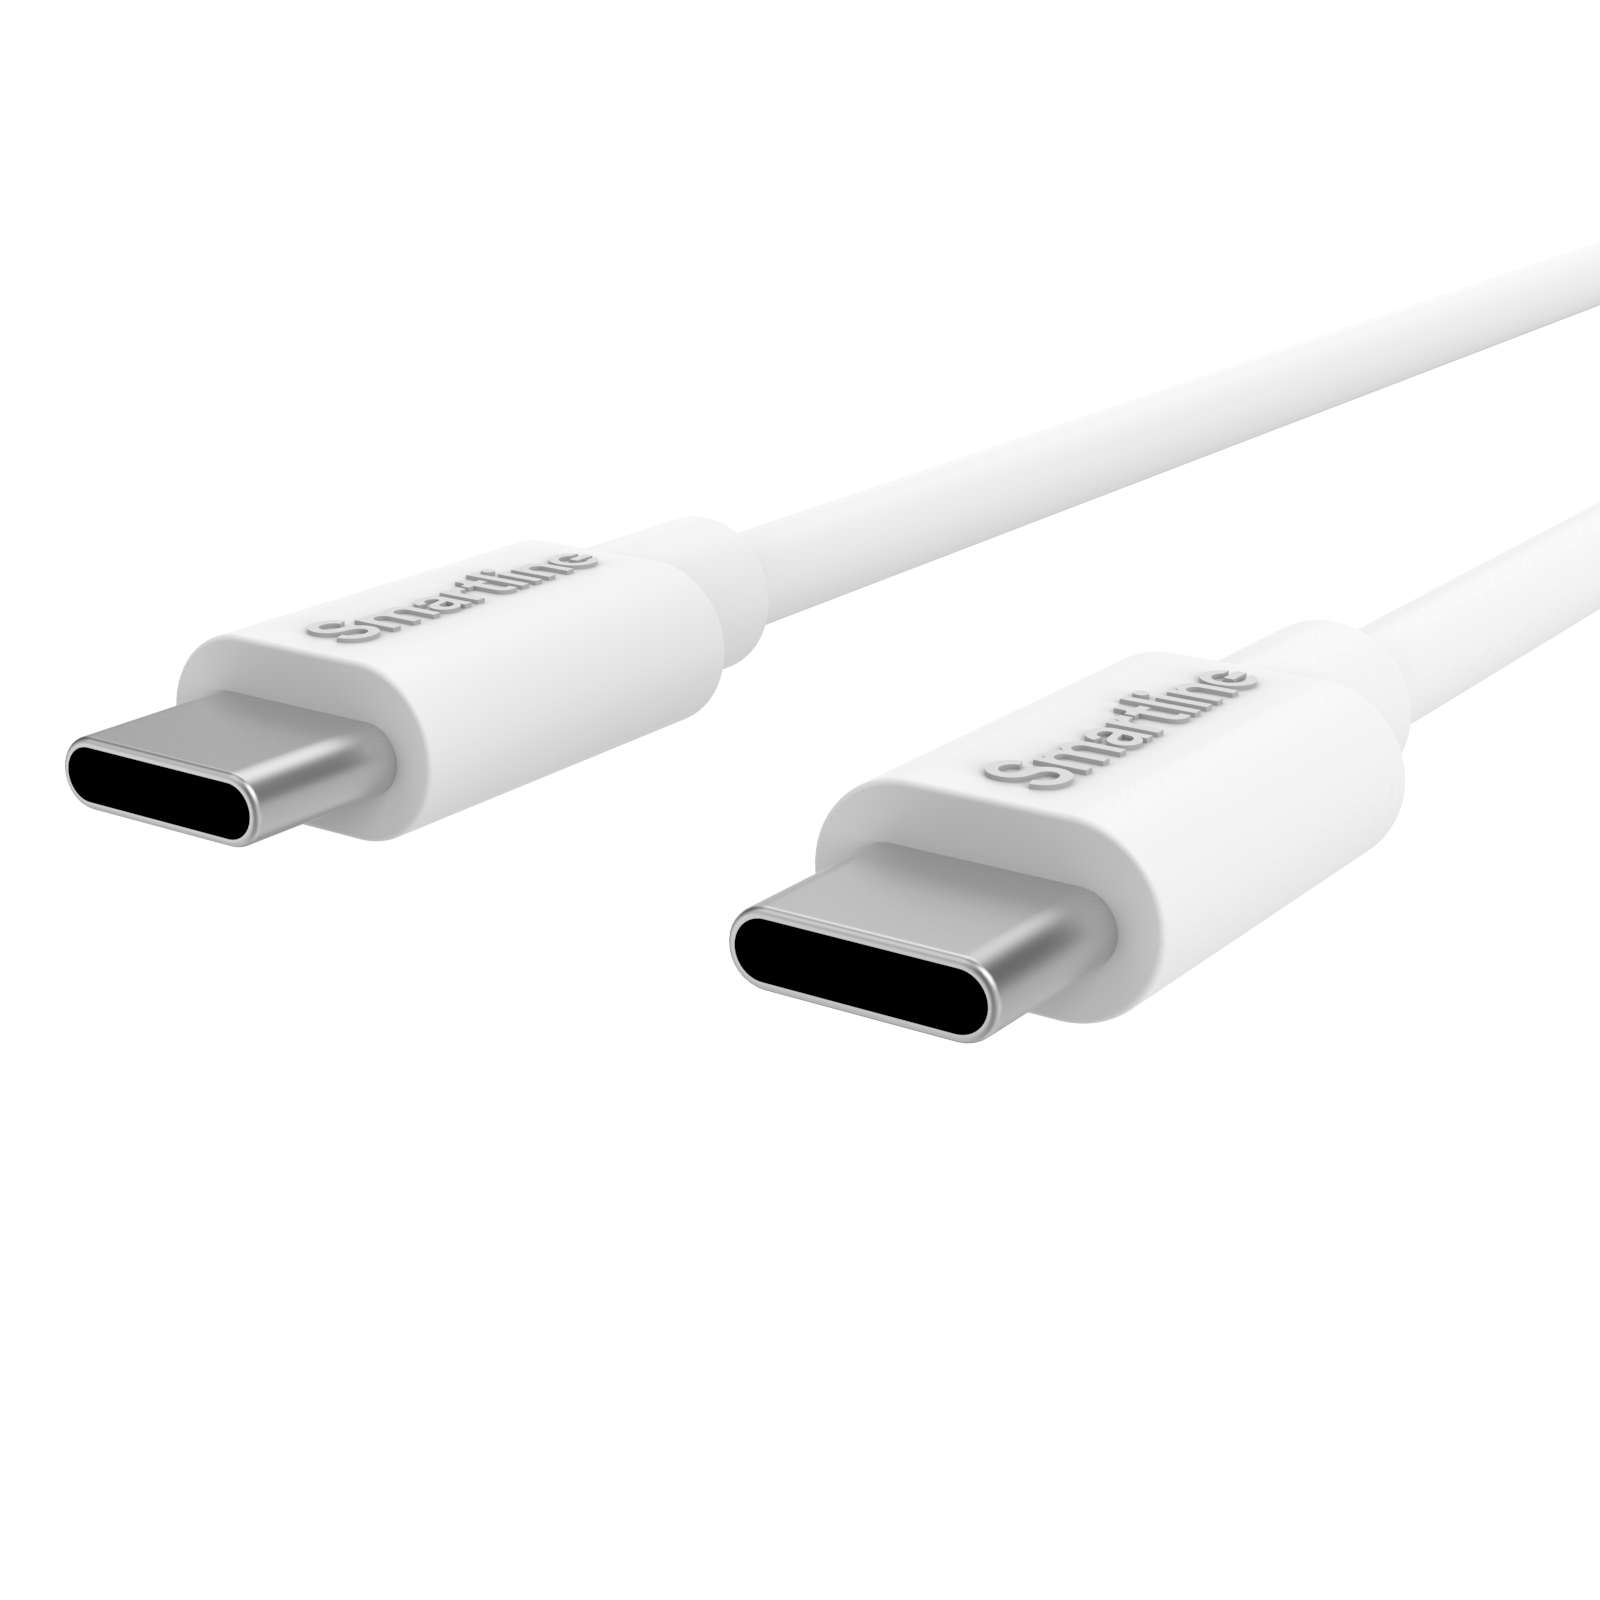 Cargador completo para móviles Xiaomi - Cable de 2m y cargador de pared USB-C - Smartline